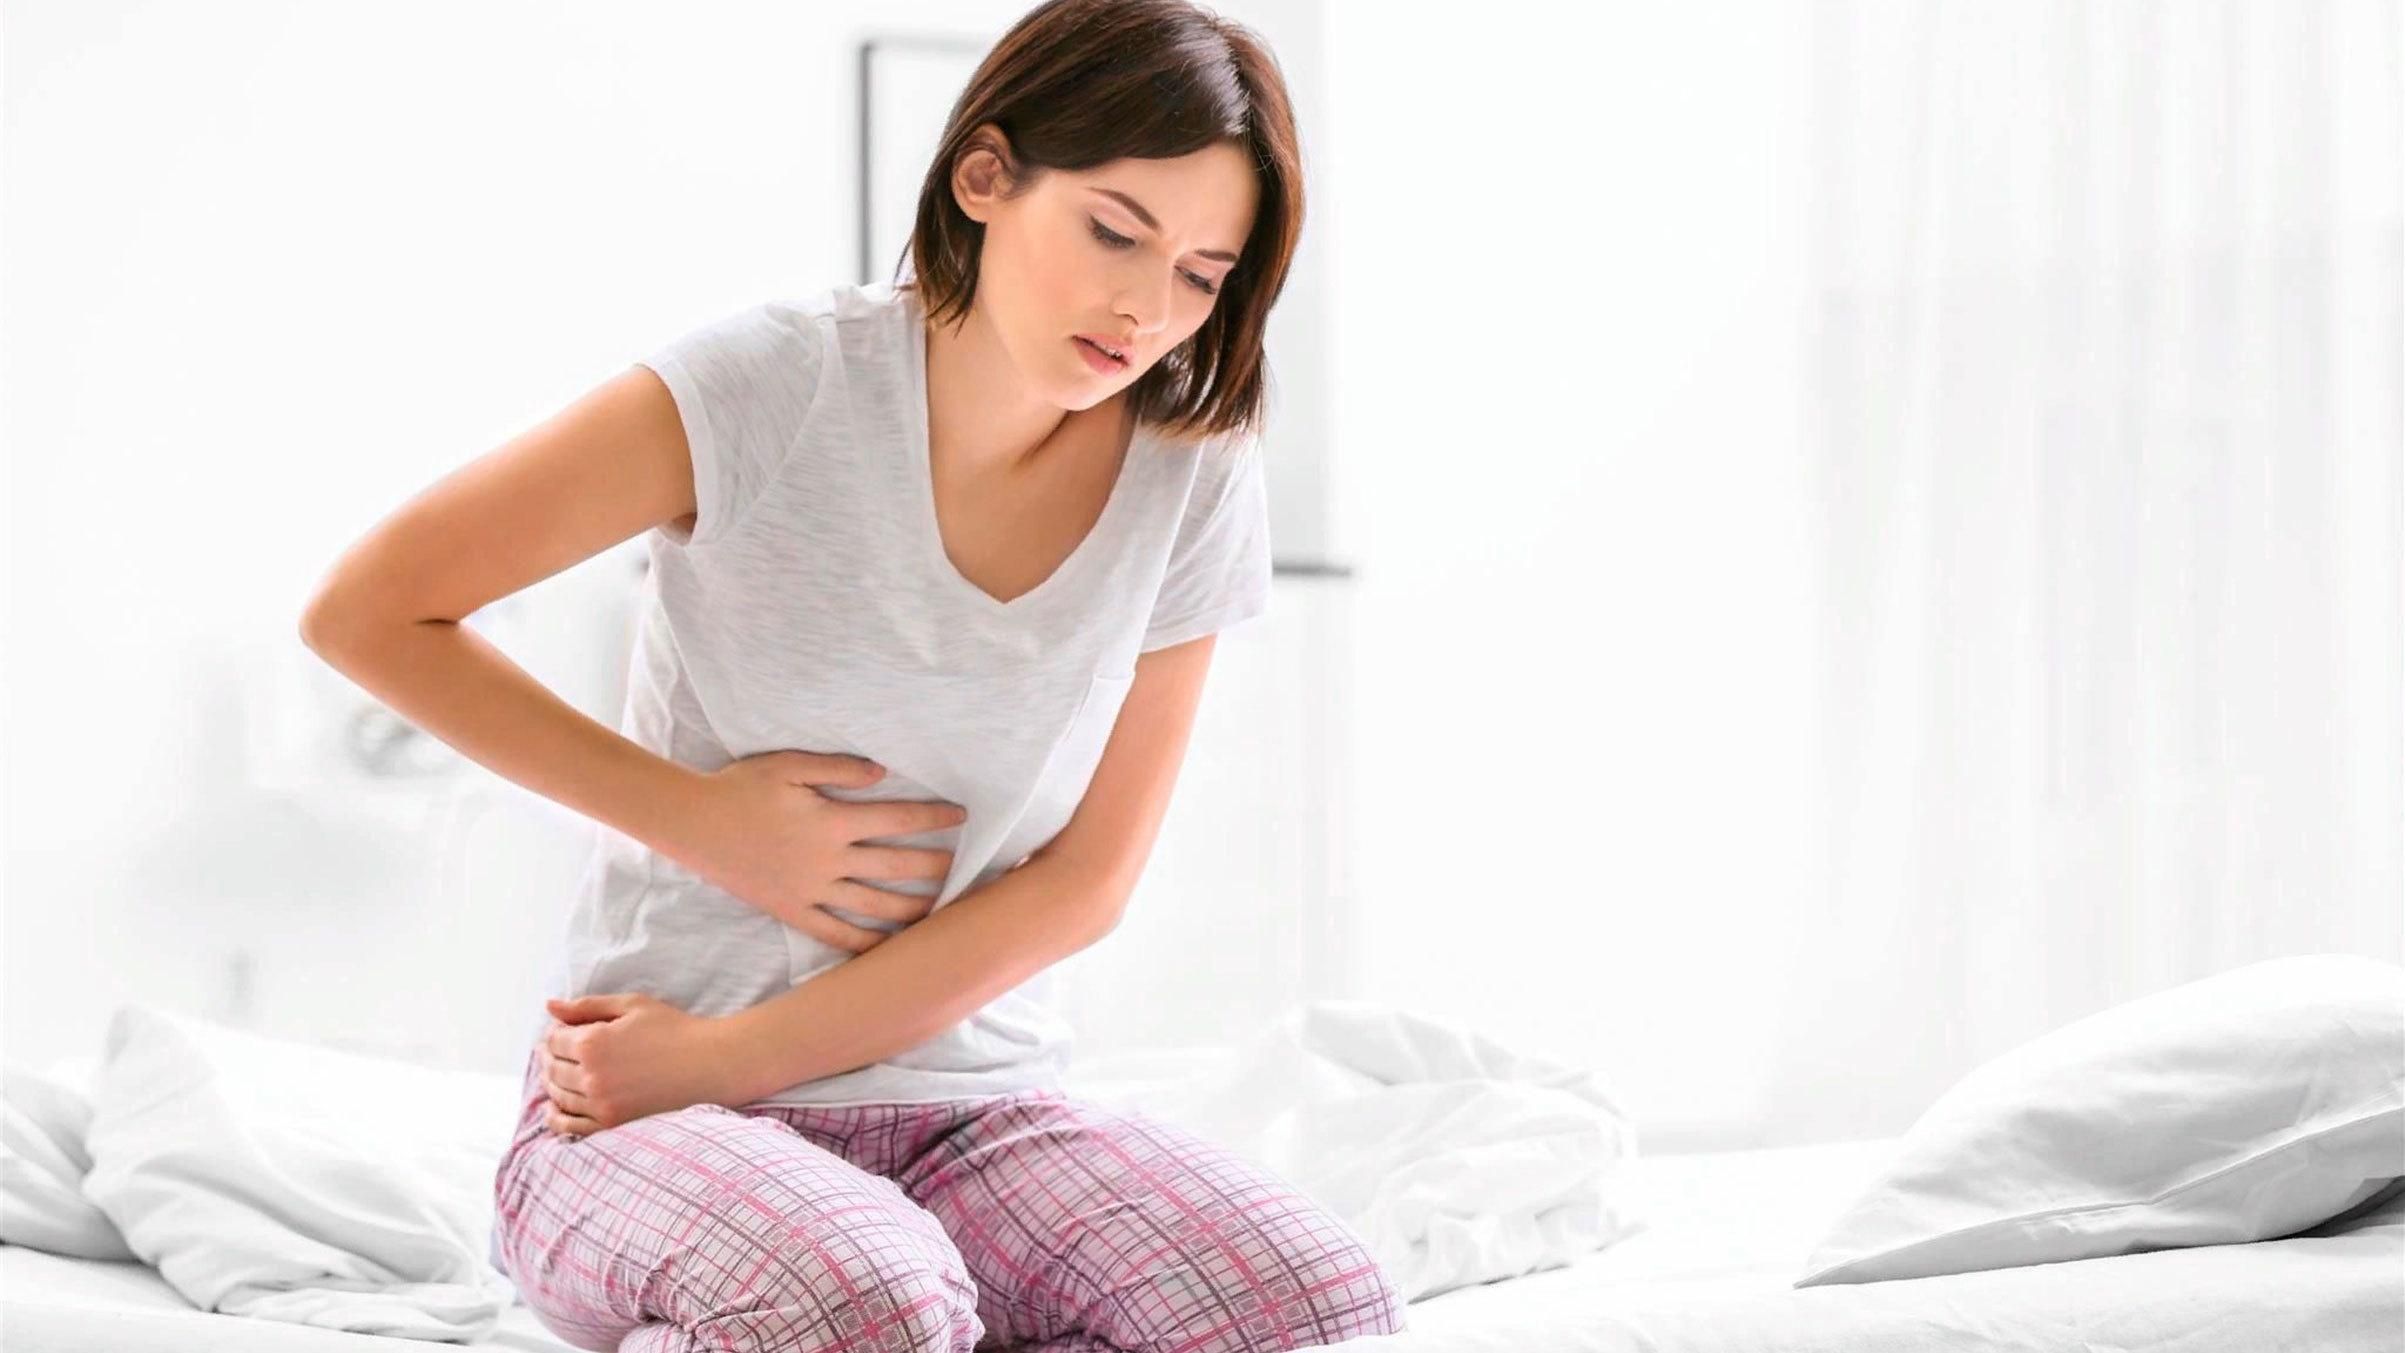 Біль при місячних - як позбутися менструального болю